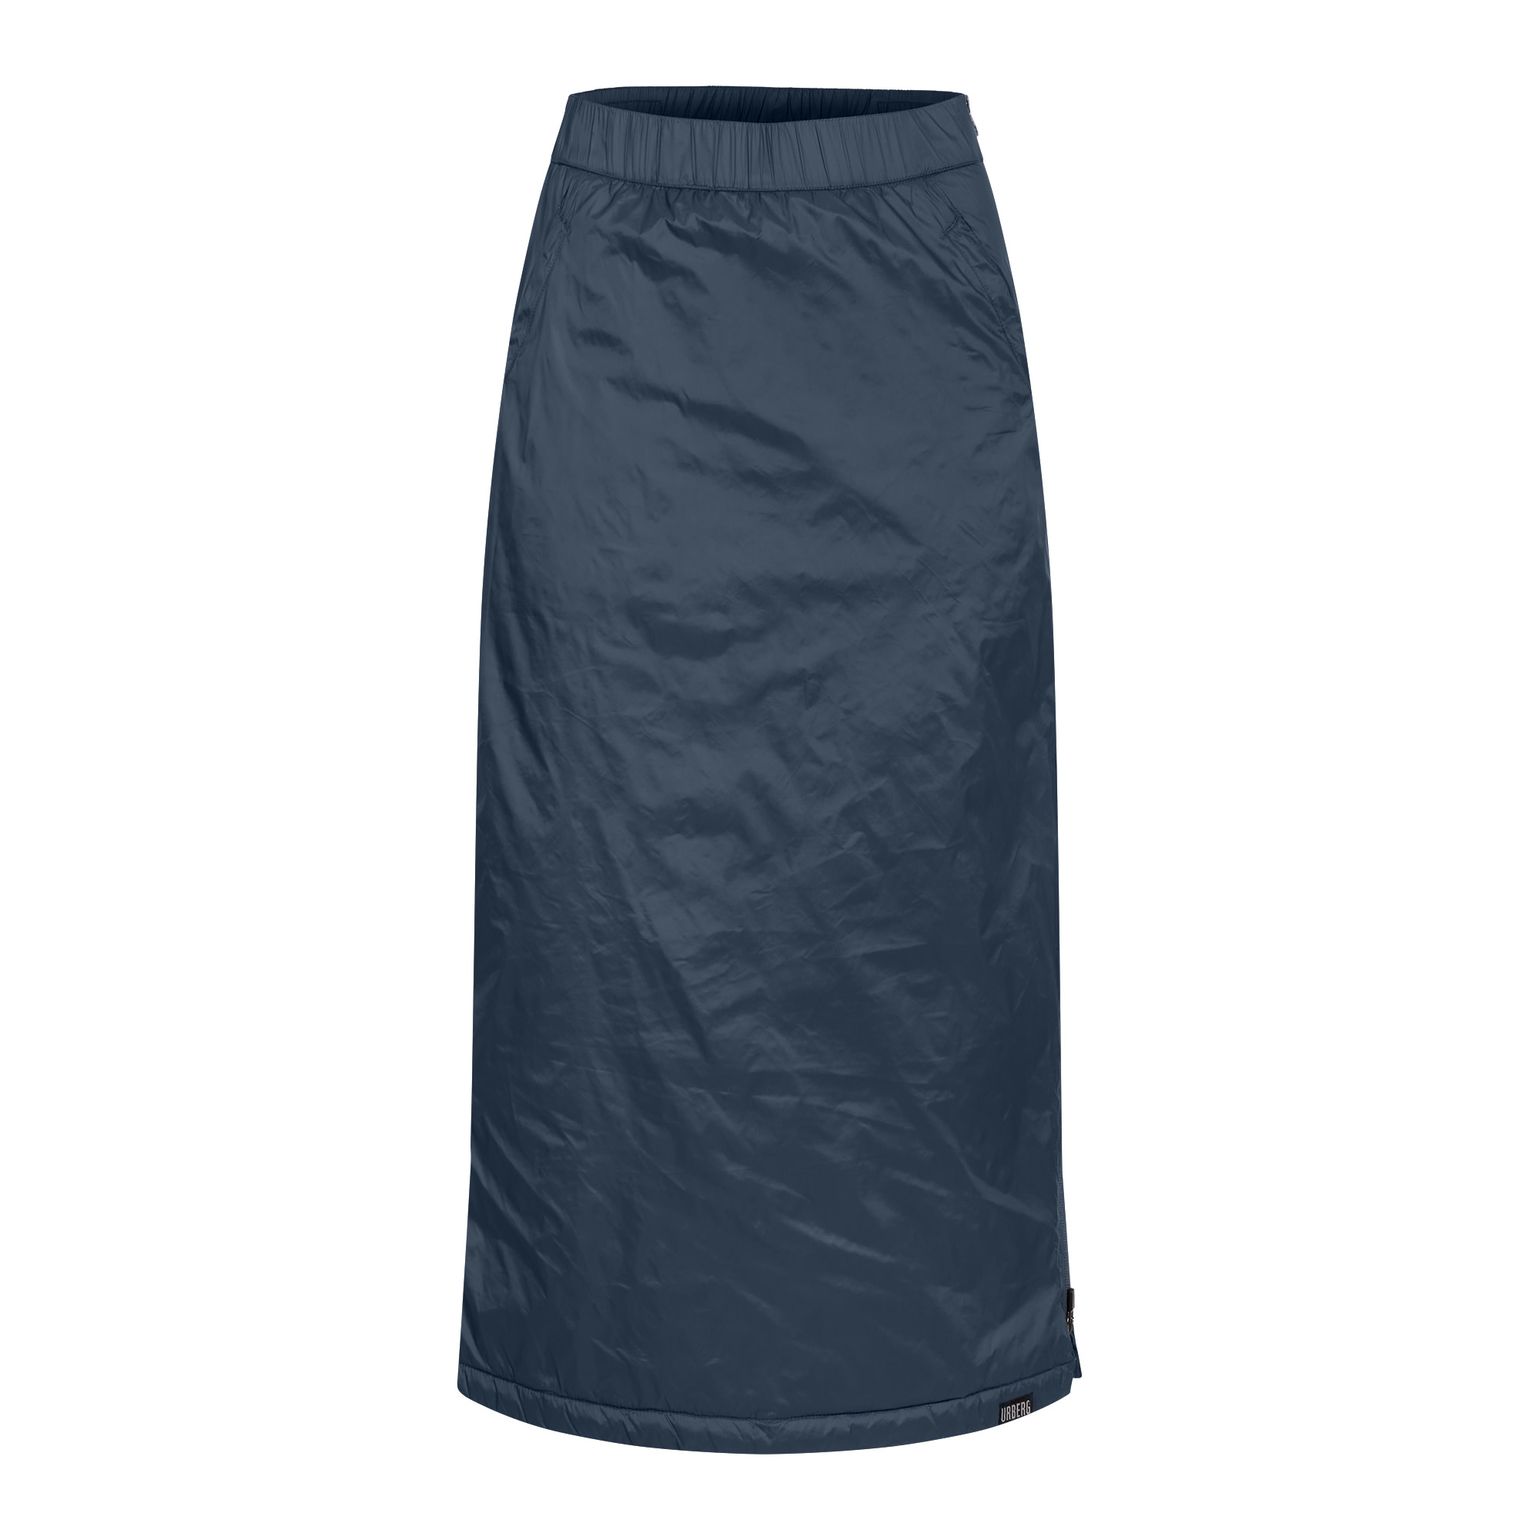 Urberg Women's Vittangi Long Padded Skirt Midnight Navy